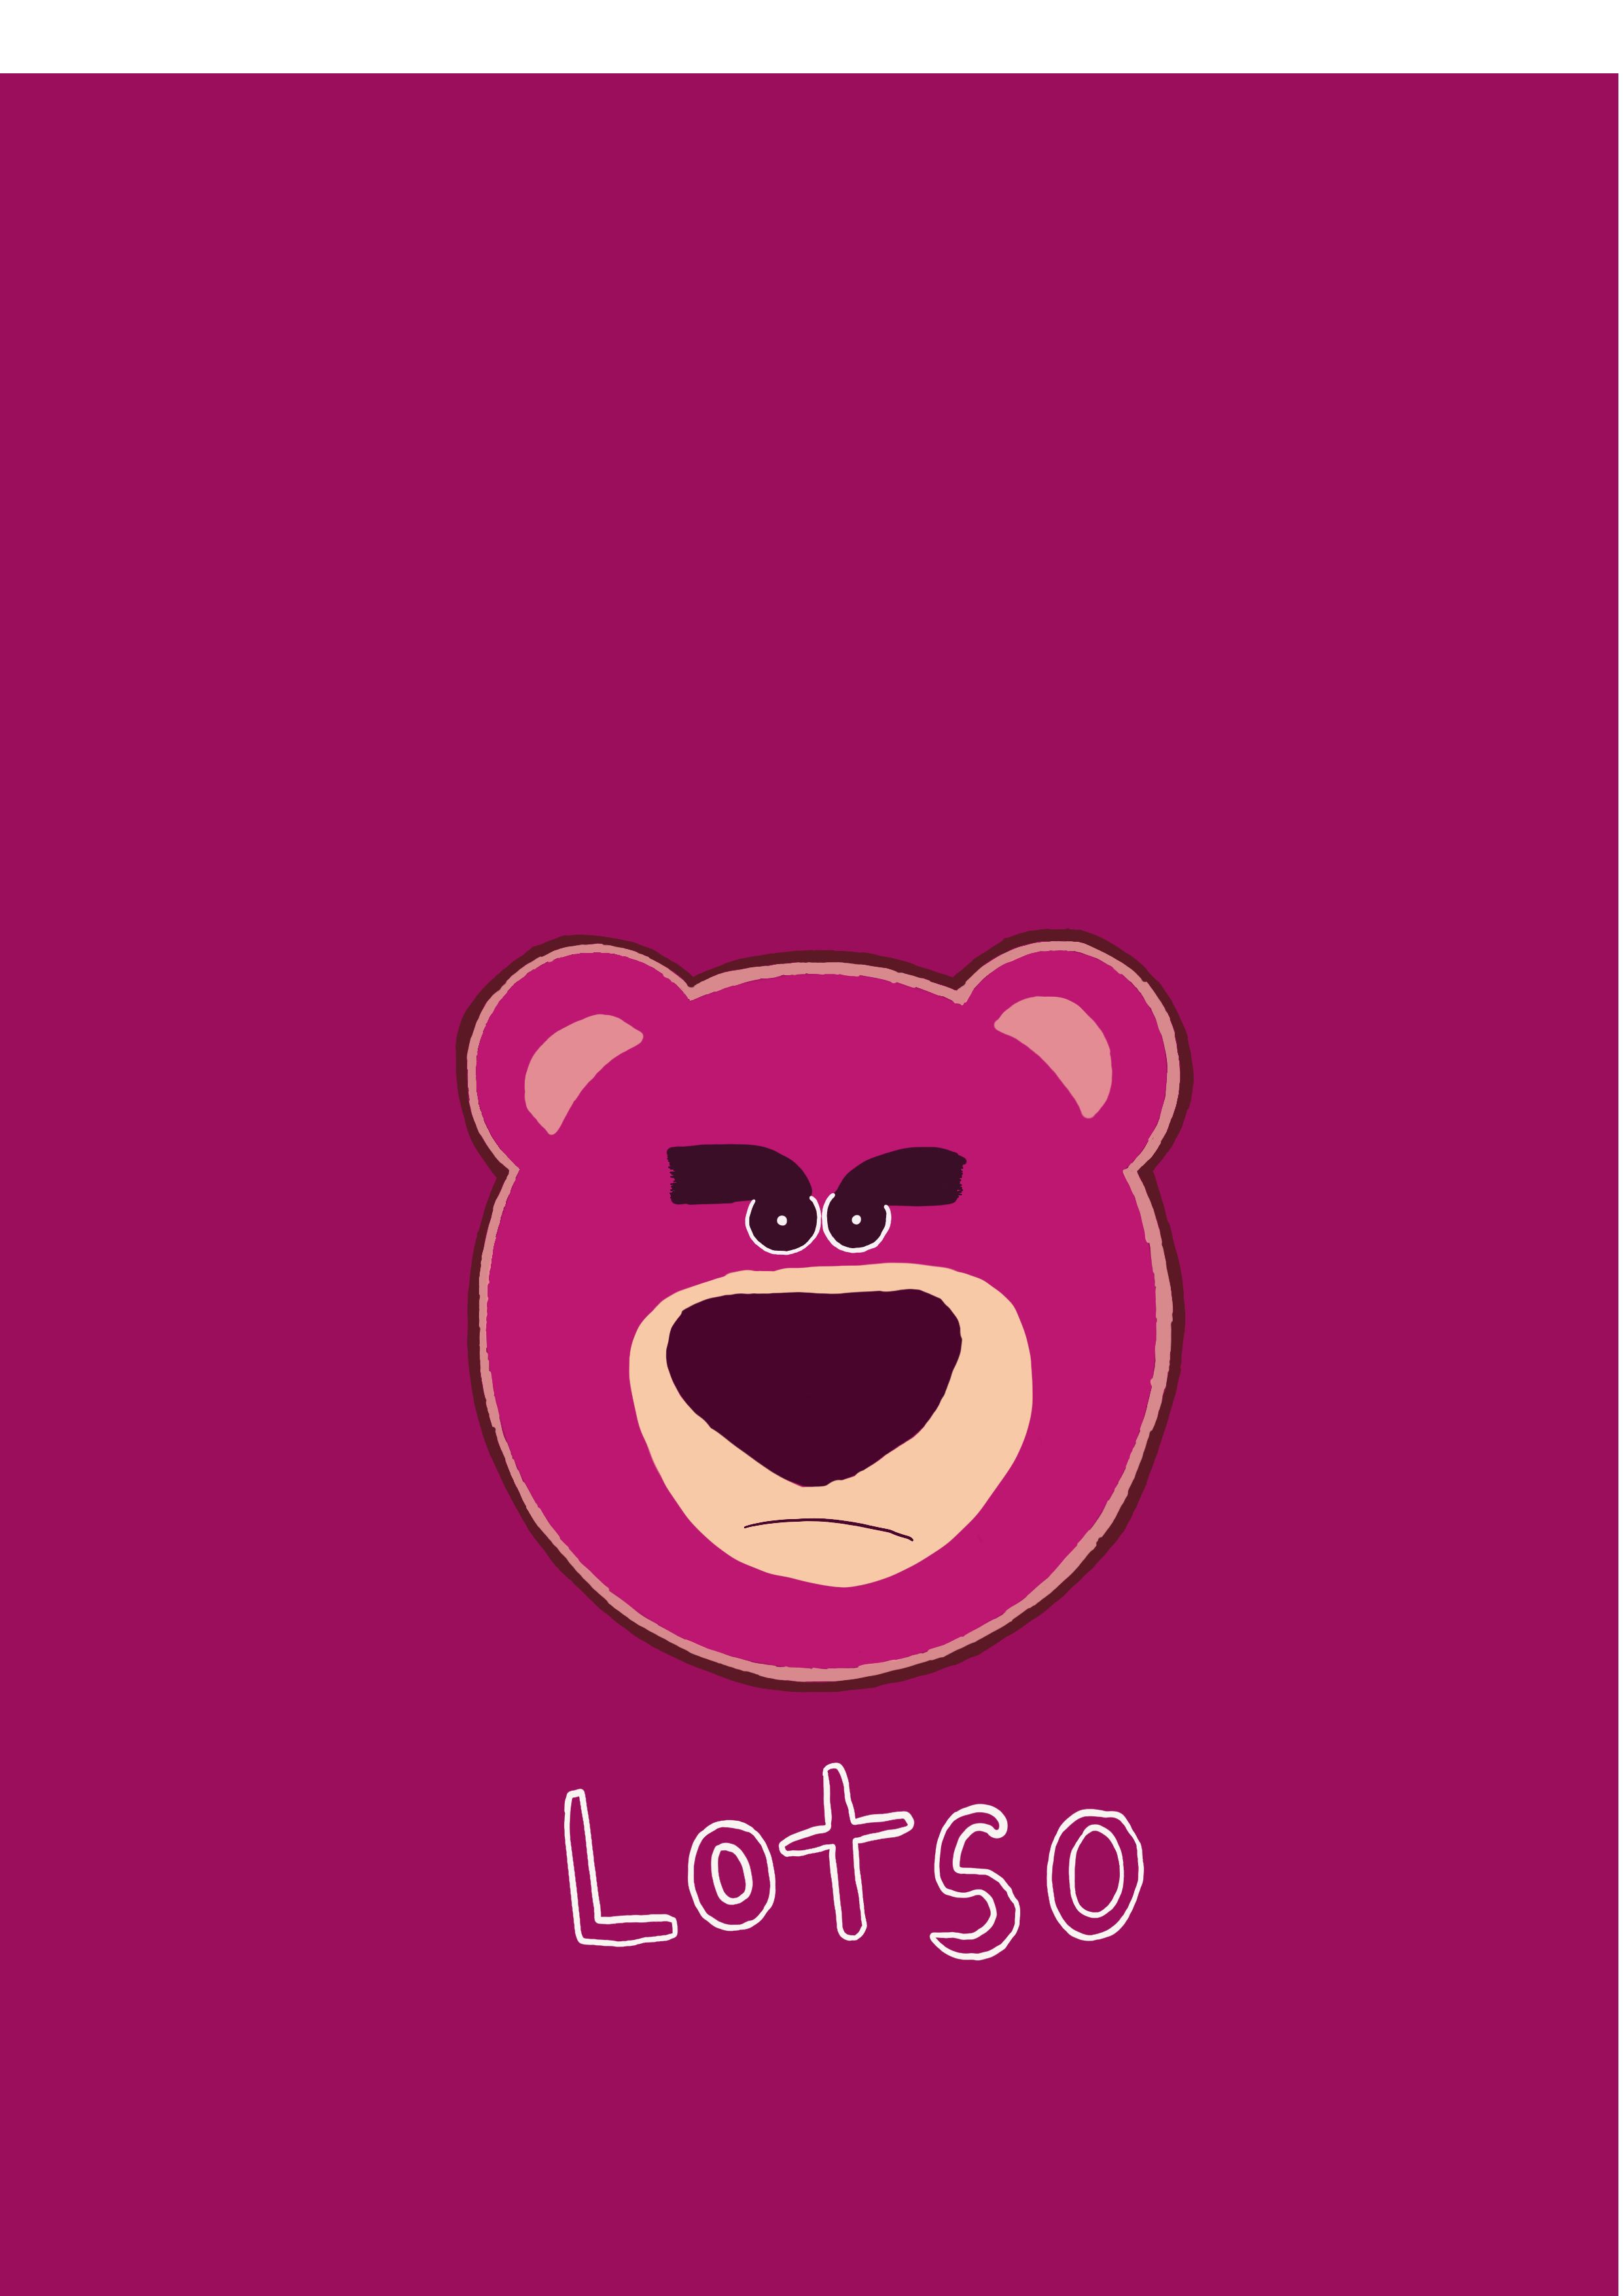 Bạn có phải là fan của Lotso trong Toy Story không? Nếu vậy, hãy cập nhật ngay hình nền Lotso mới nhất cho màn hình của mình. Tại WallpaperAccess, chúng tôi cung cấp những hình nền Lotso đẹp và chất lượng nhất để bạn có thể trang trí màn hình điện thoại hay máy tính của mình. Hãy khám phá ngay những tác phẩm nghệ thuật này!